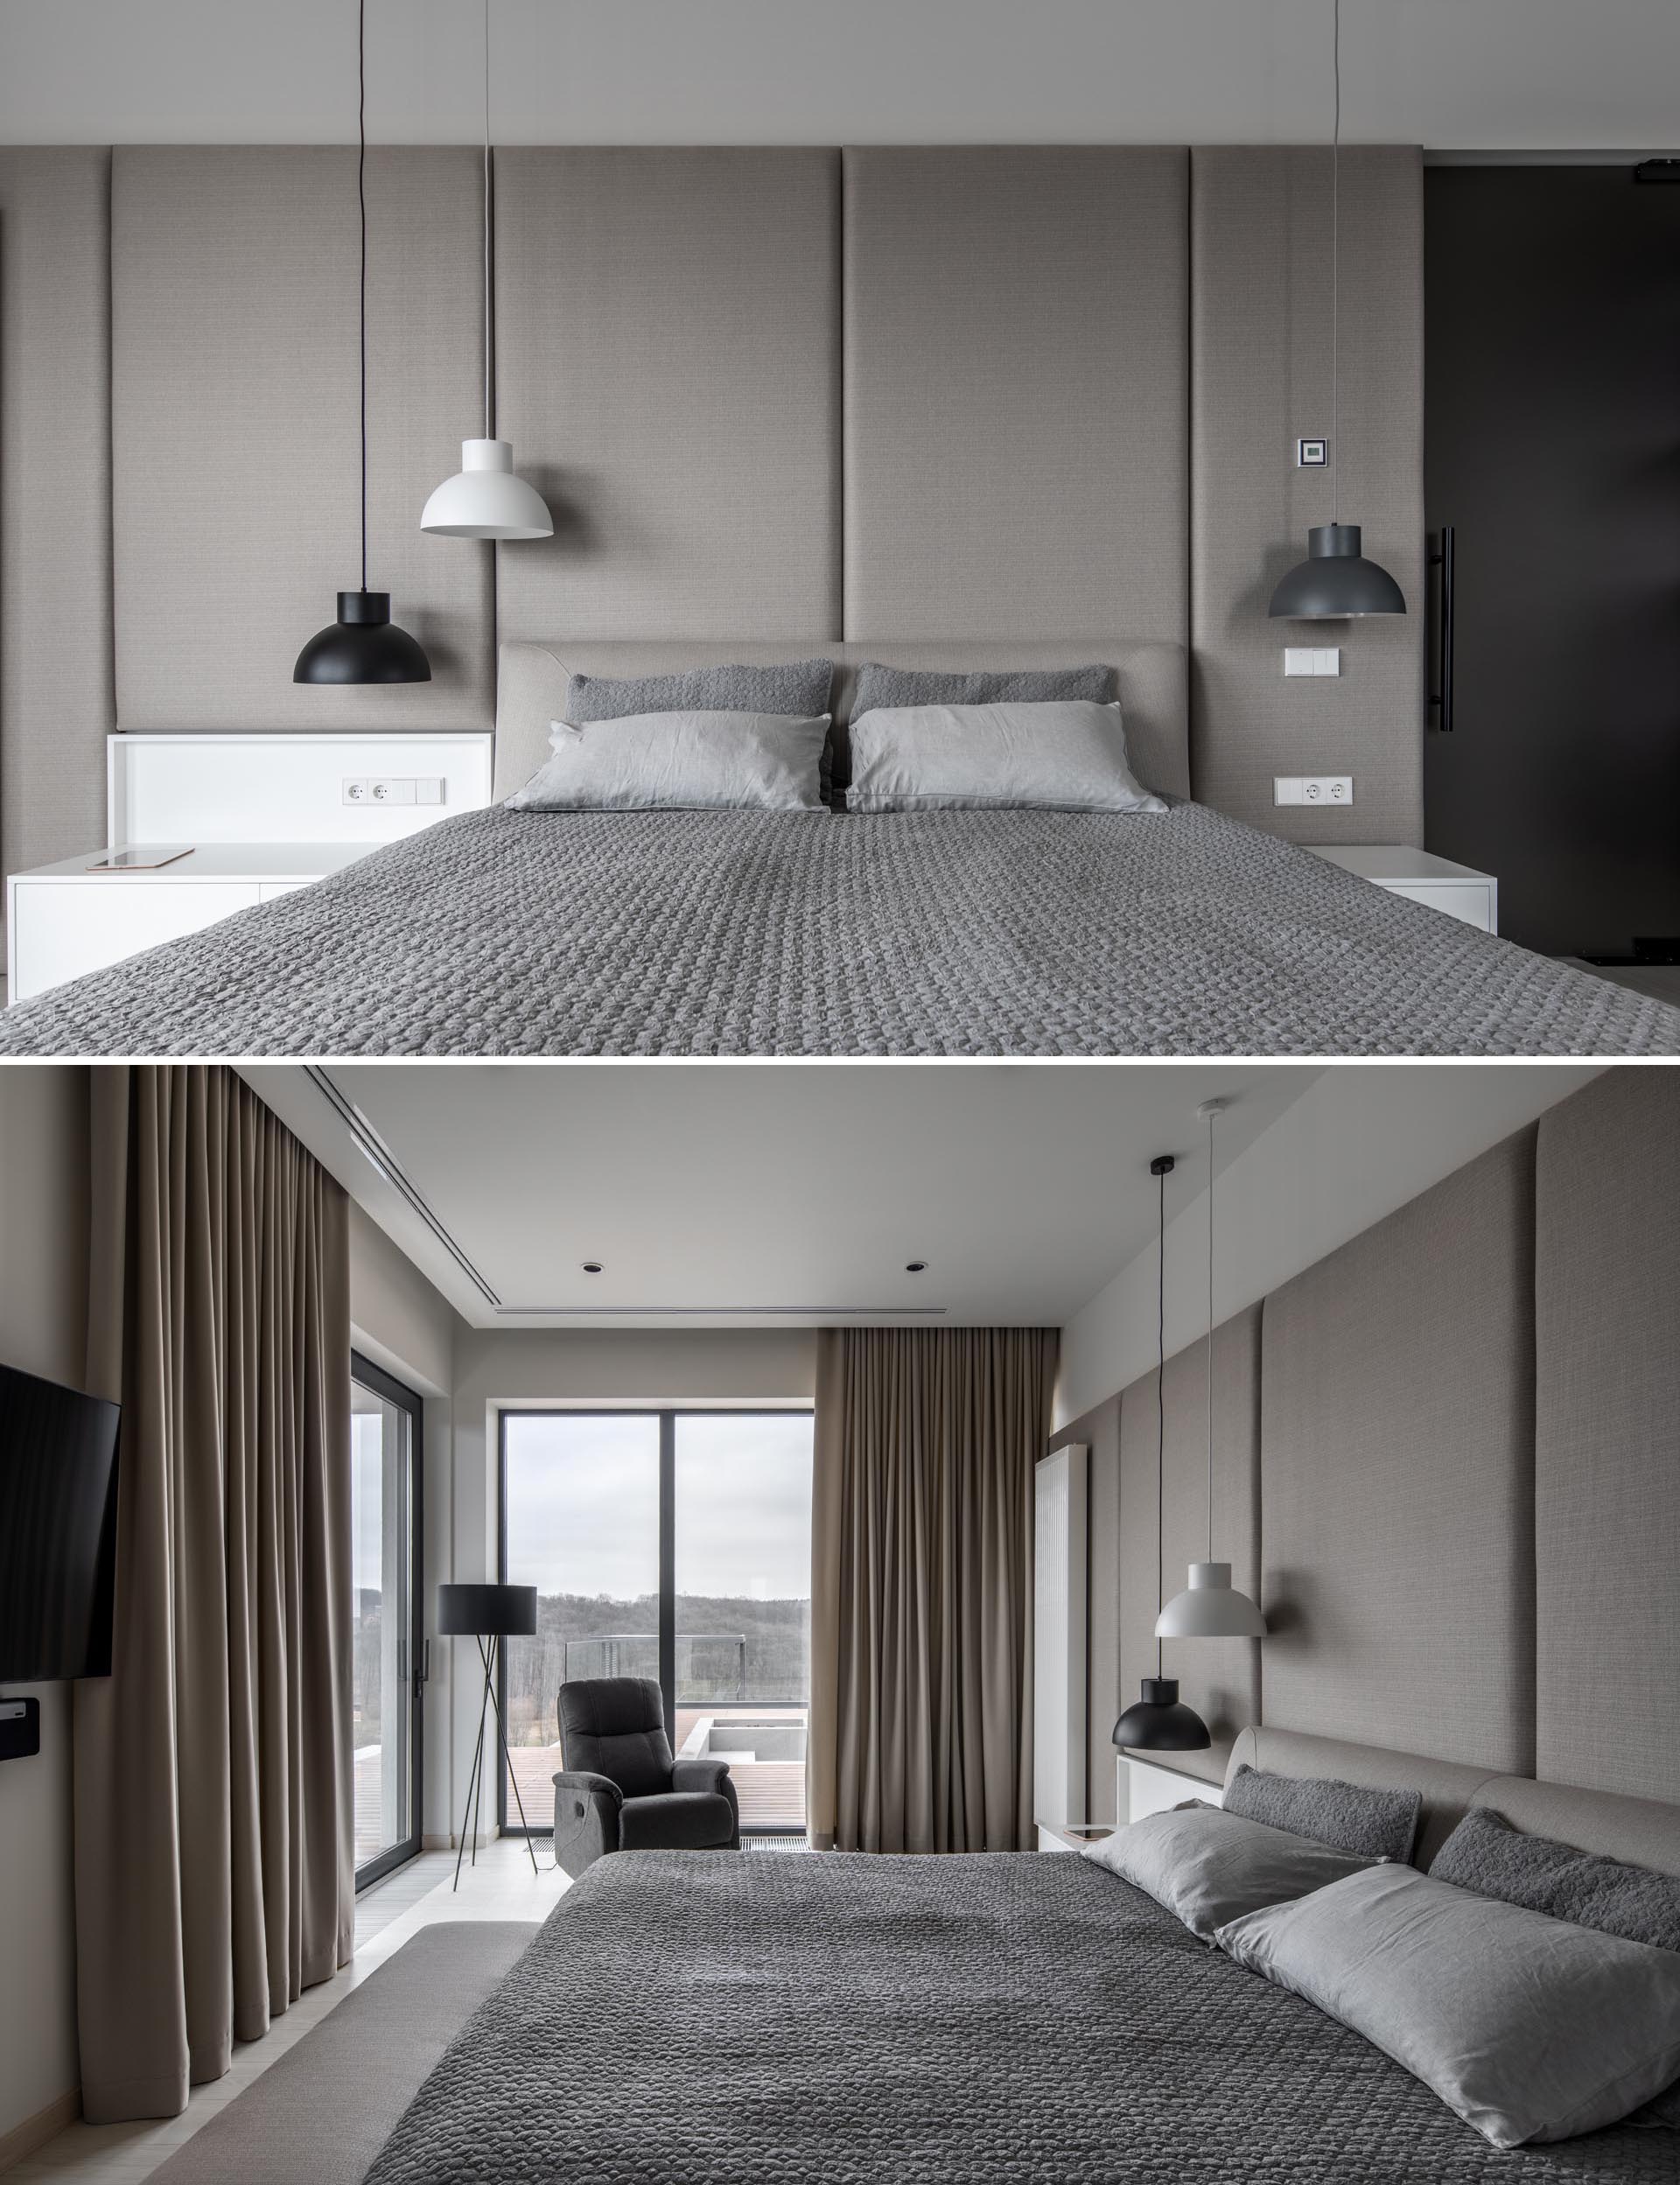 Современная спальня гостиничного типа в серо-бежевой цветовой гамме с белыми и черными акцентами.